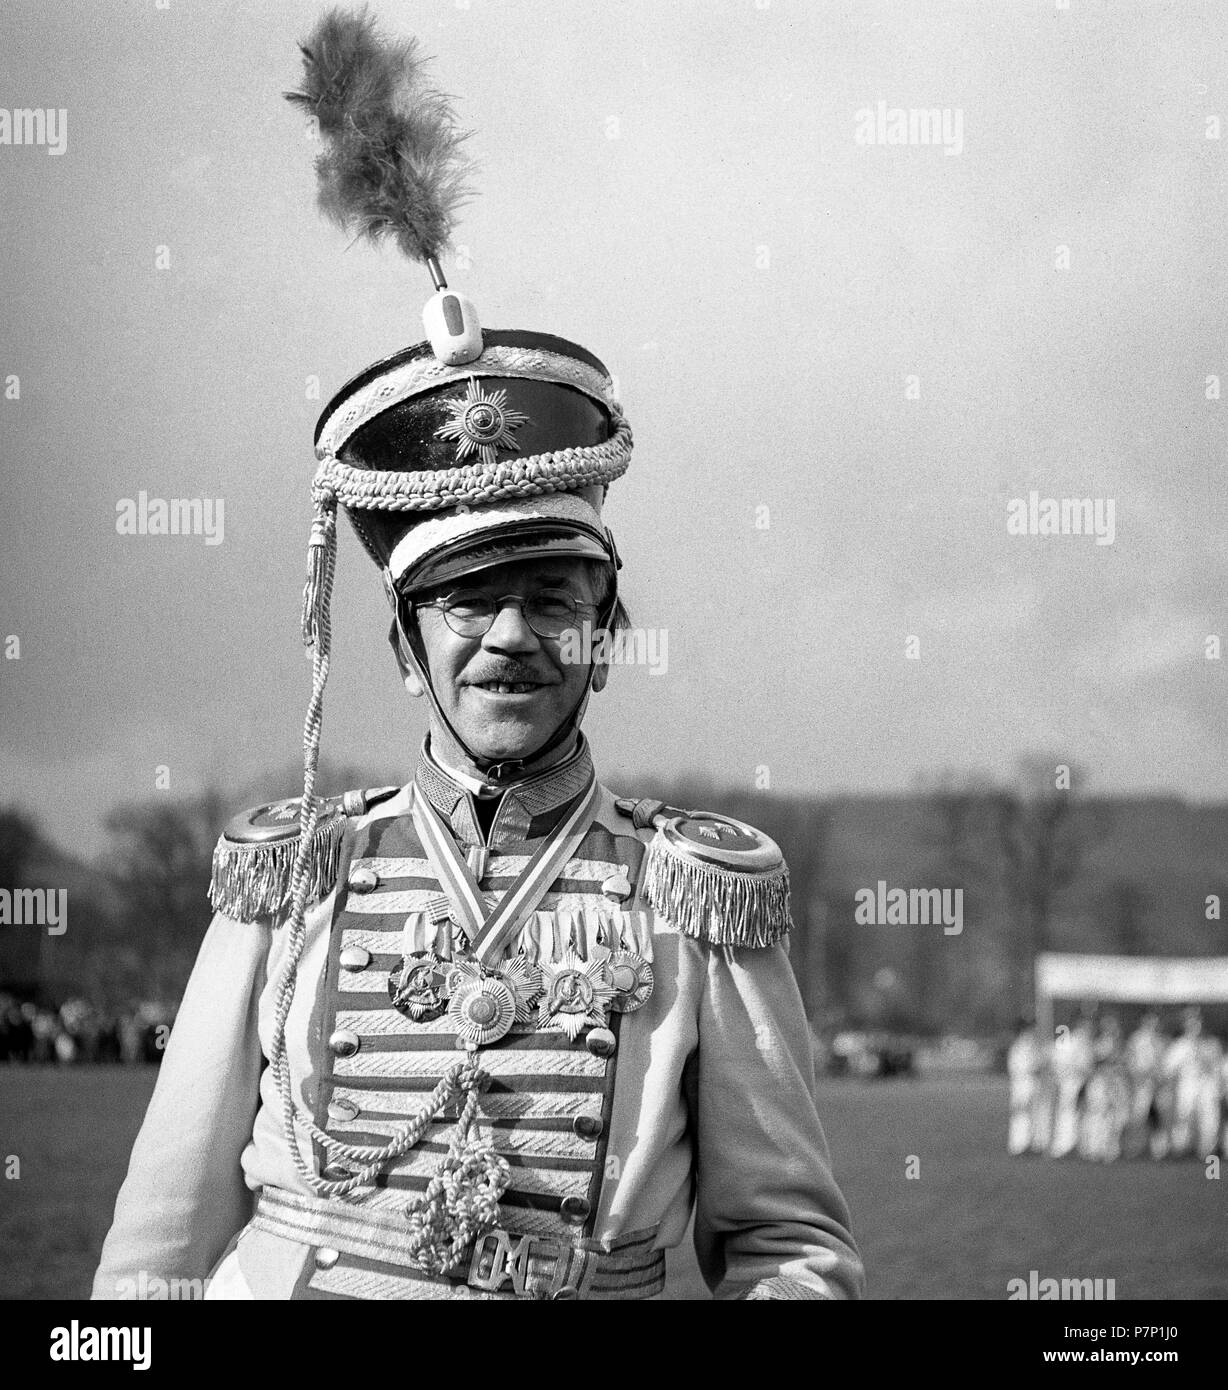 Mann im Admiral's Uniform, Karneval um 1950, die Umgebung von Freiburg,  Deutschland Stockfotografie - Alamy